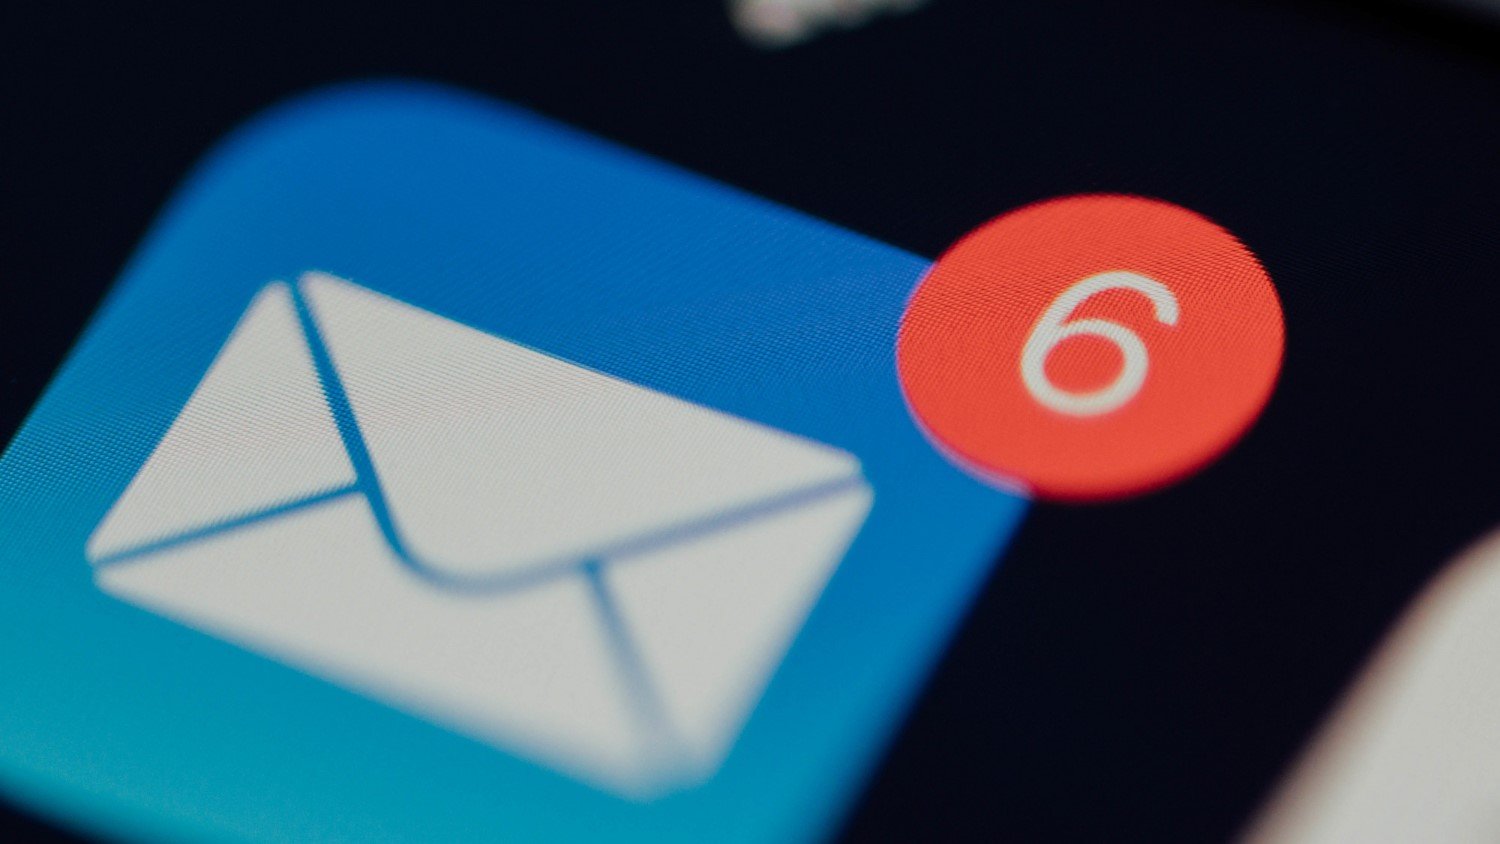 Cara Buat Gmail dengan VPN